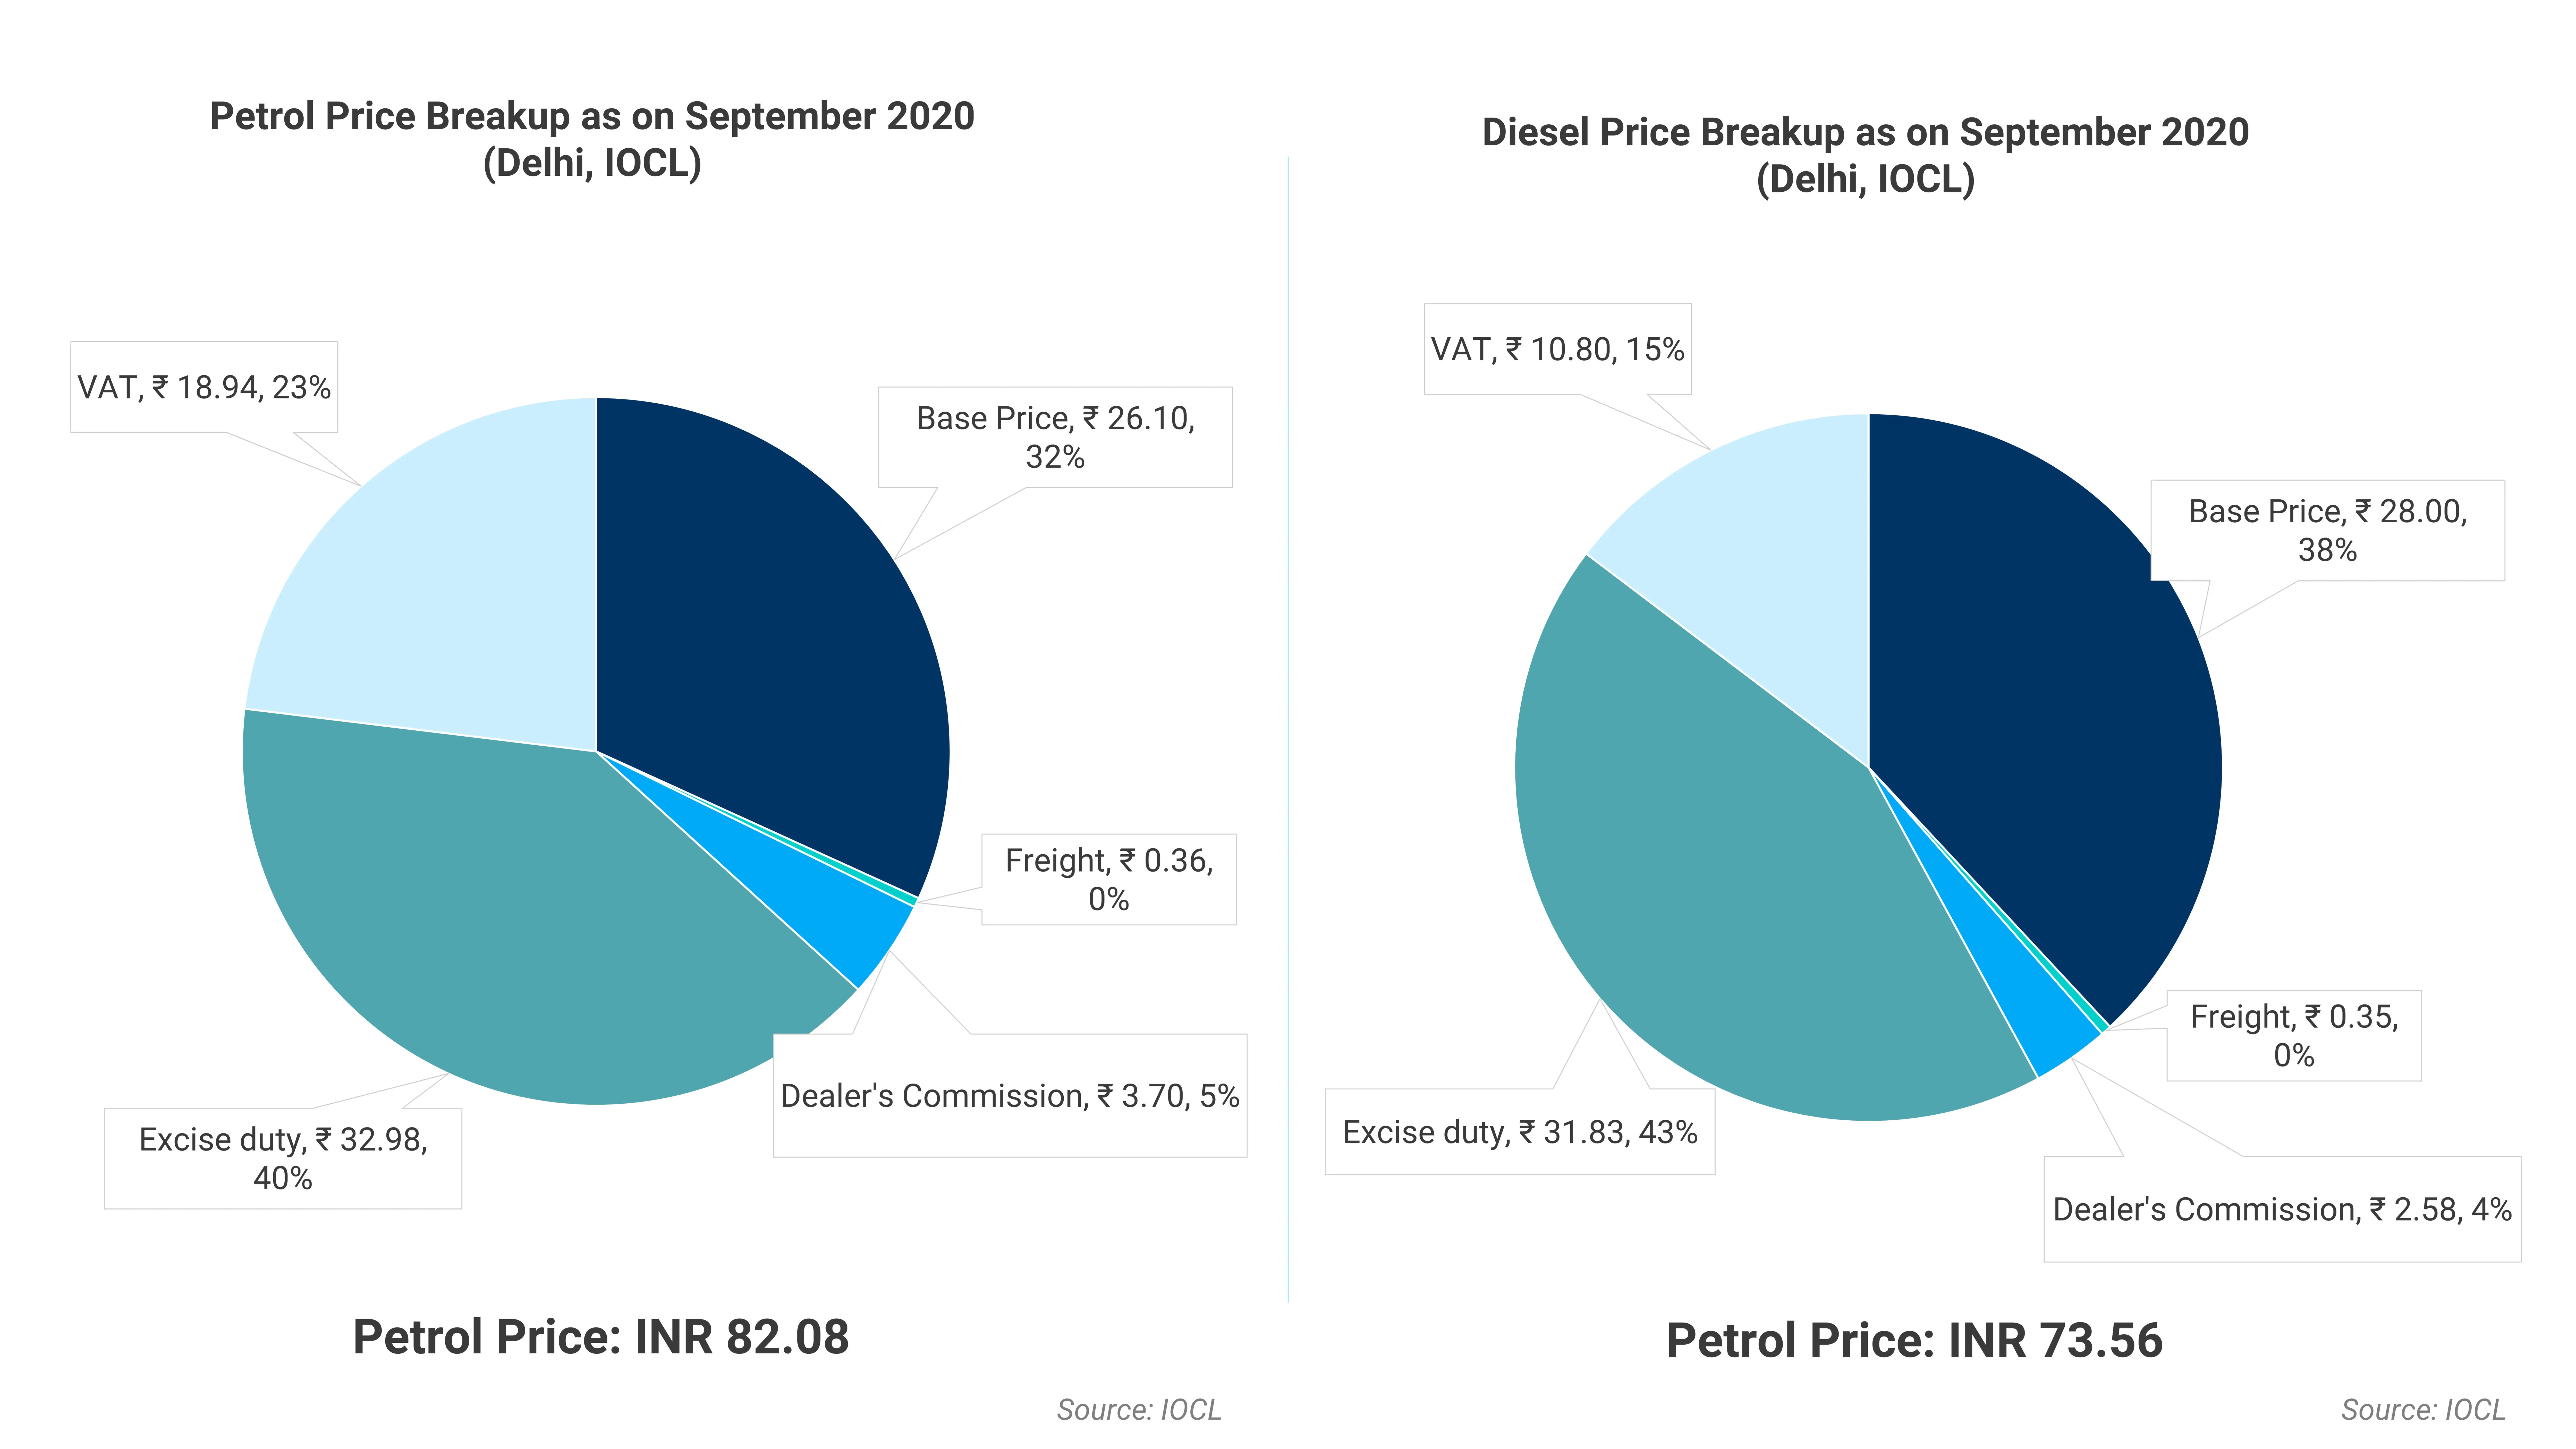 Indian Petrol & Diesel Price Breakup as on September 2020